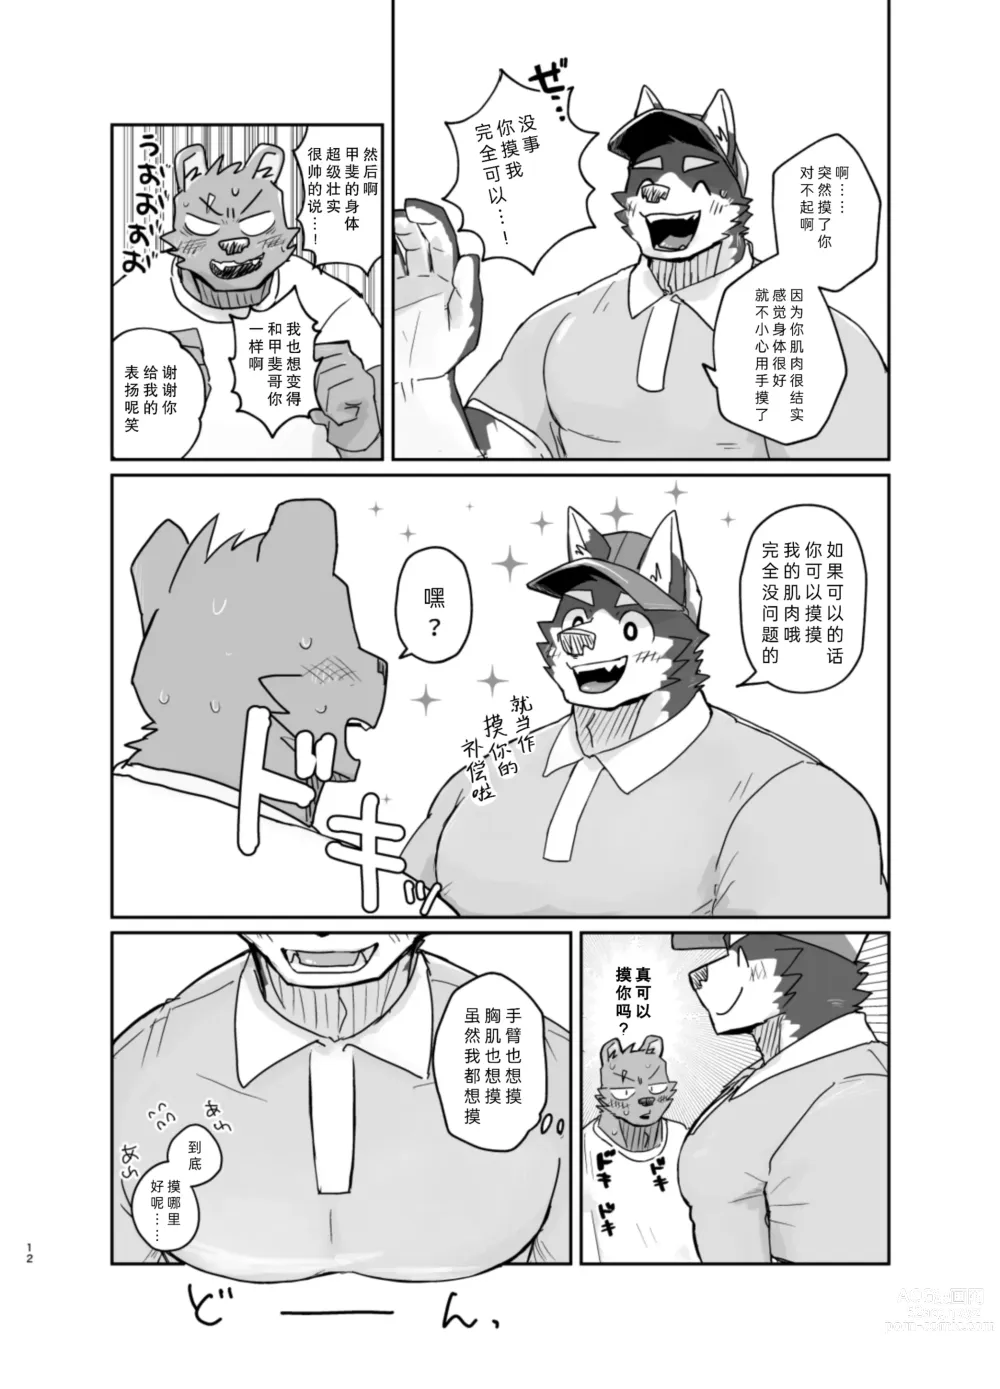 Page 12 of doujinshi 搬家的十分钟服务